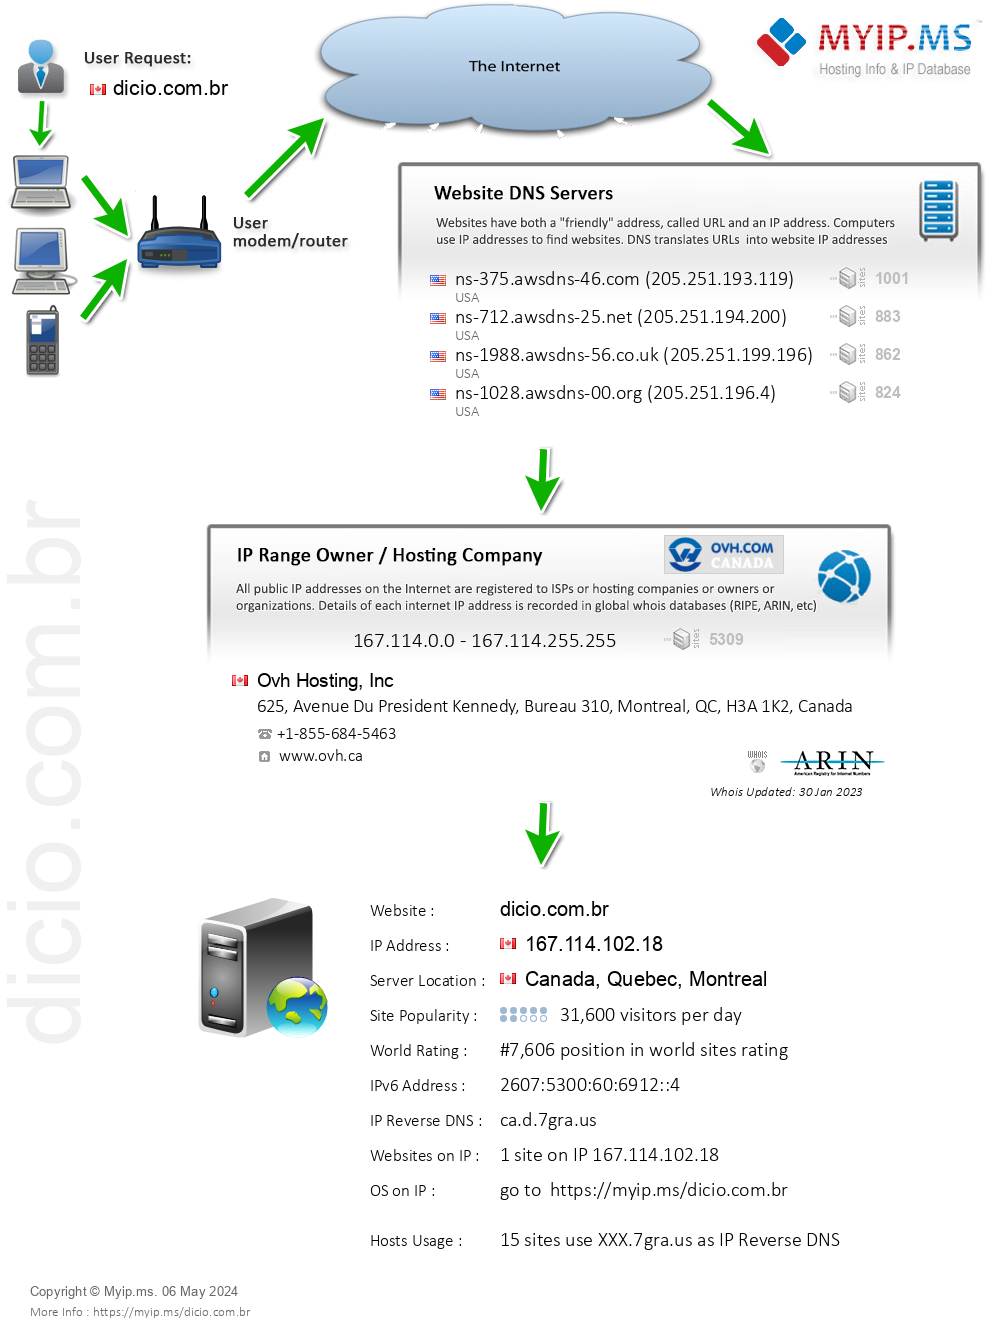 Dicio.com.br - Website Hosting Visual IP Diagram